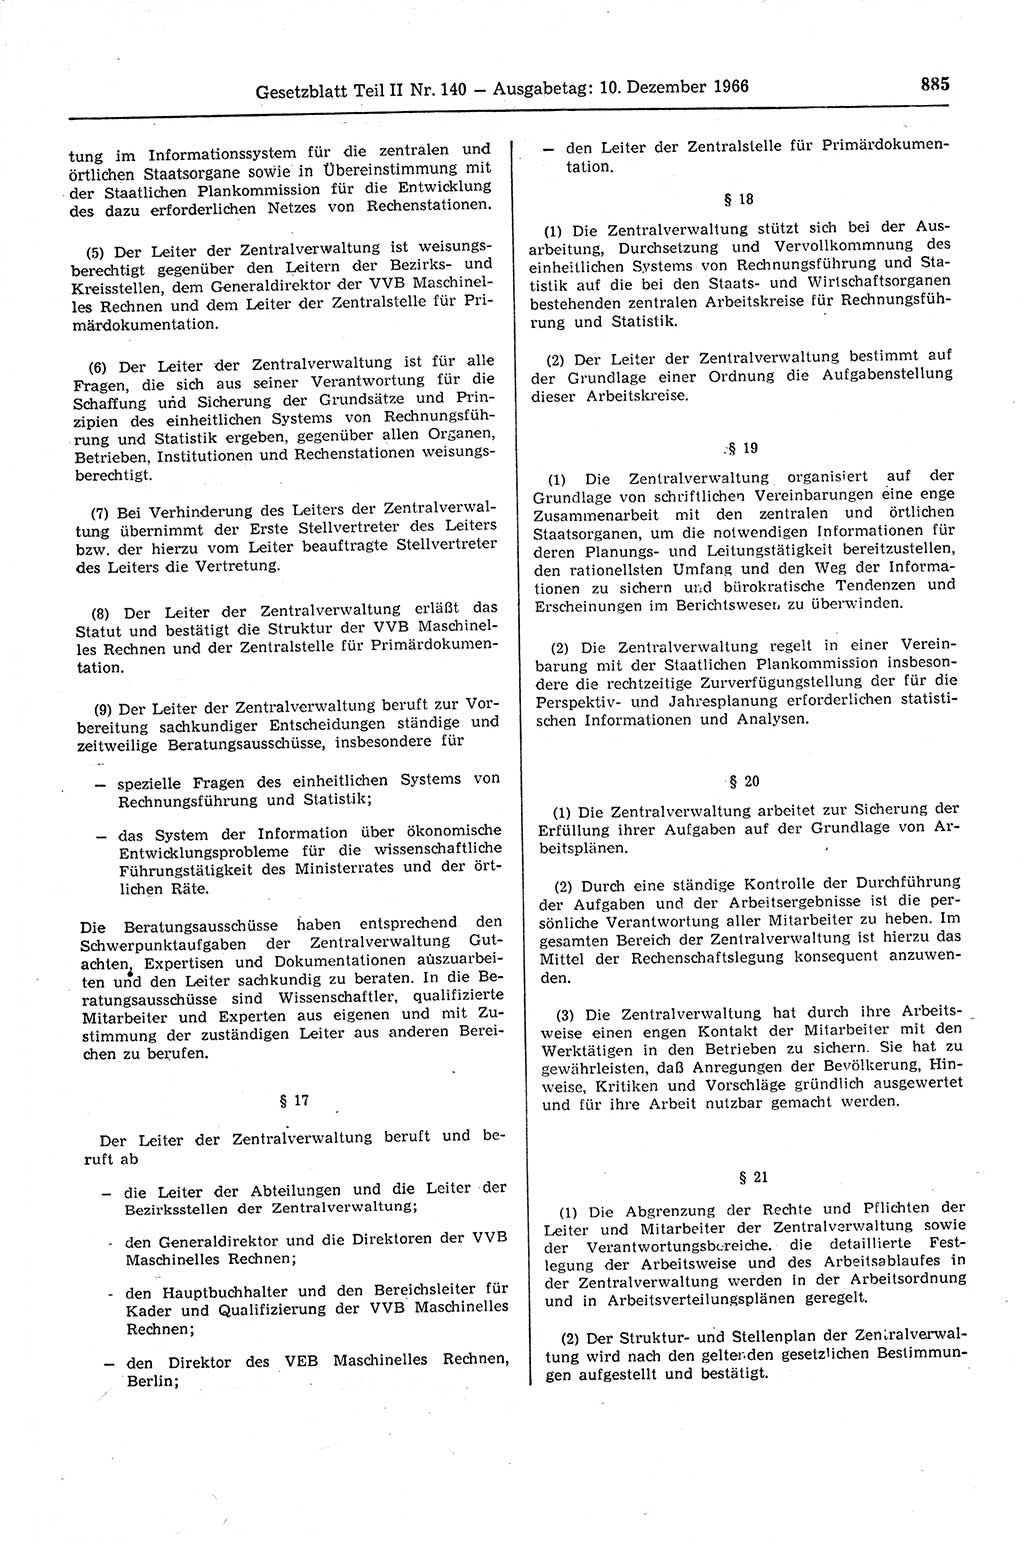 Gesetzblatt (GBl.) der Deutschen Demokratischen Republik (DDR) Teil ⅠⅠ 1966, Seite 885 (GBl. DDR ⅠⅠ 1966, S. 885)